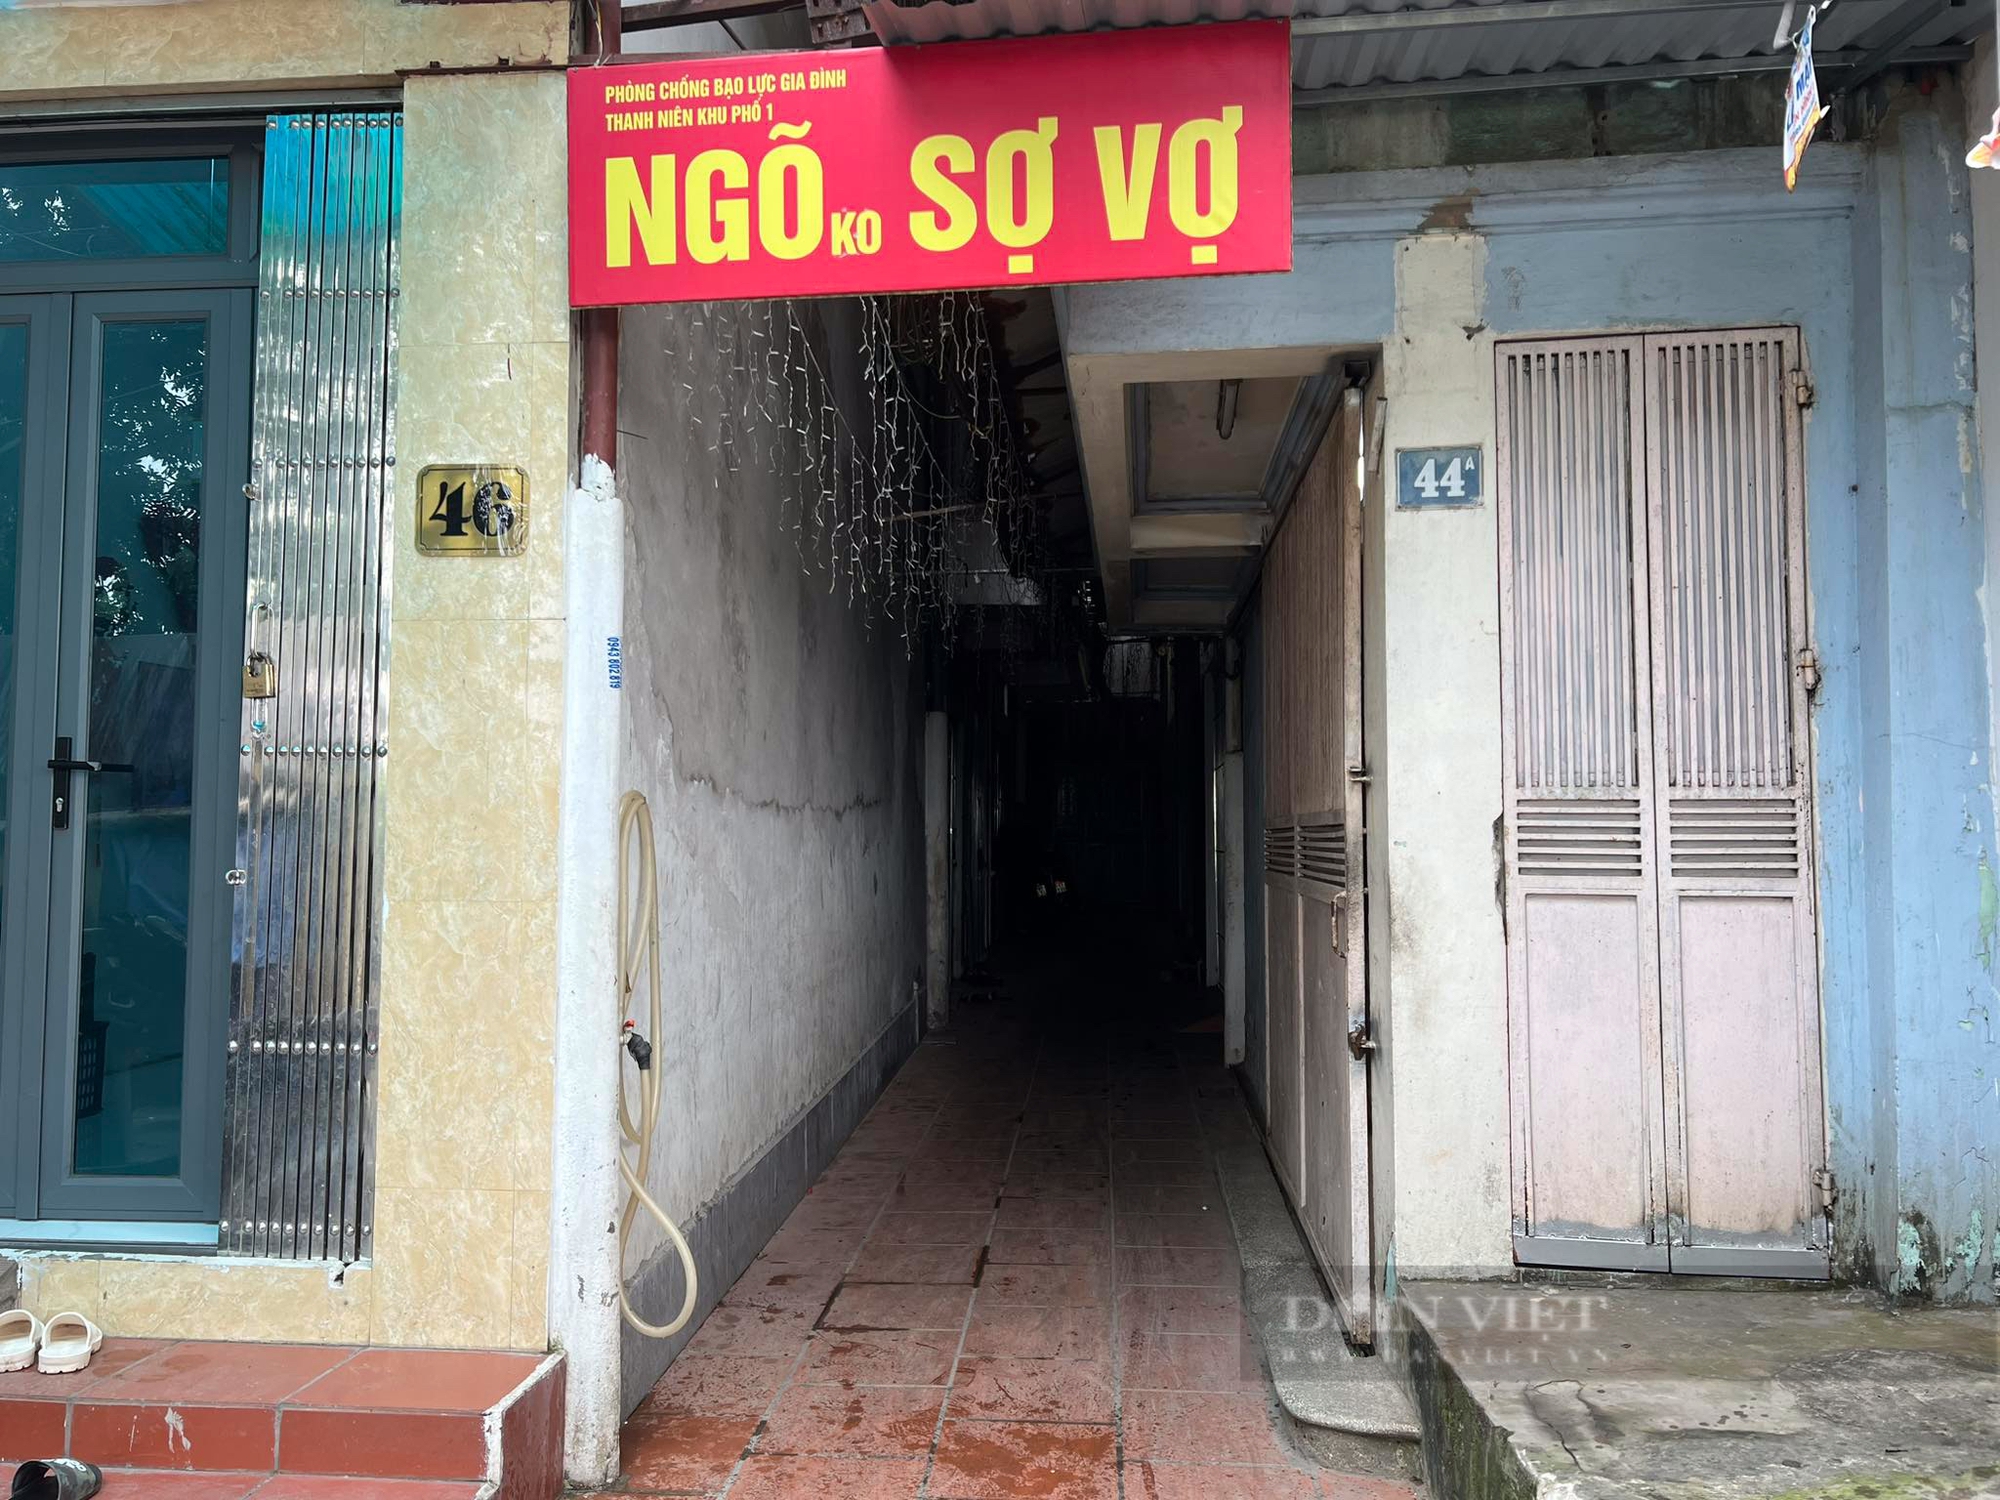 "'Ngõ không sợ vợ" ở Hà Nội bất ngờ bị gỡ sau khi gây sốt mạng xã hội- Ảnh 1.